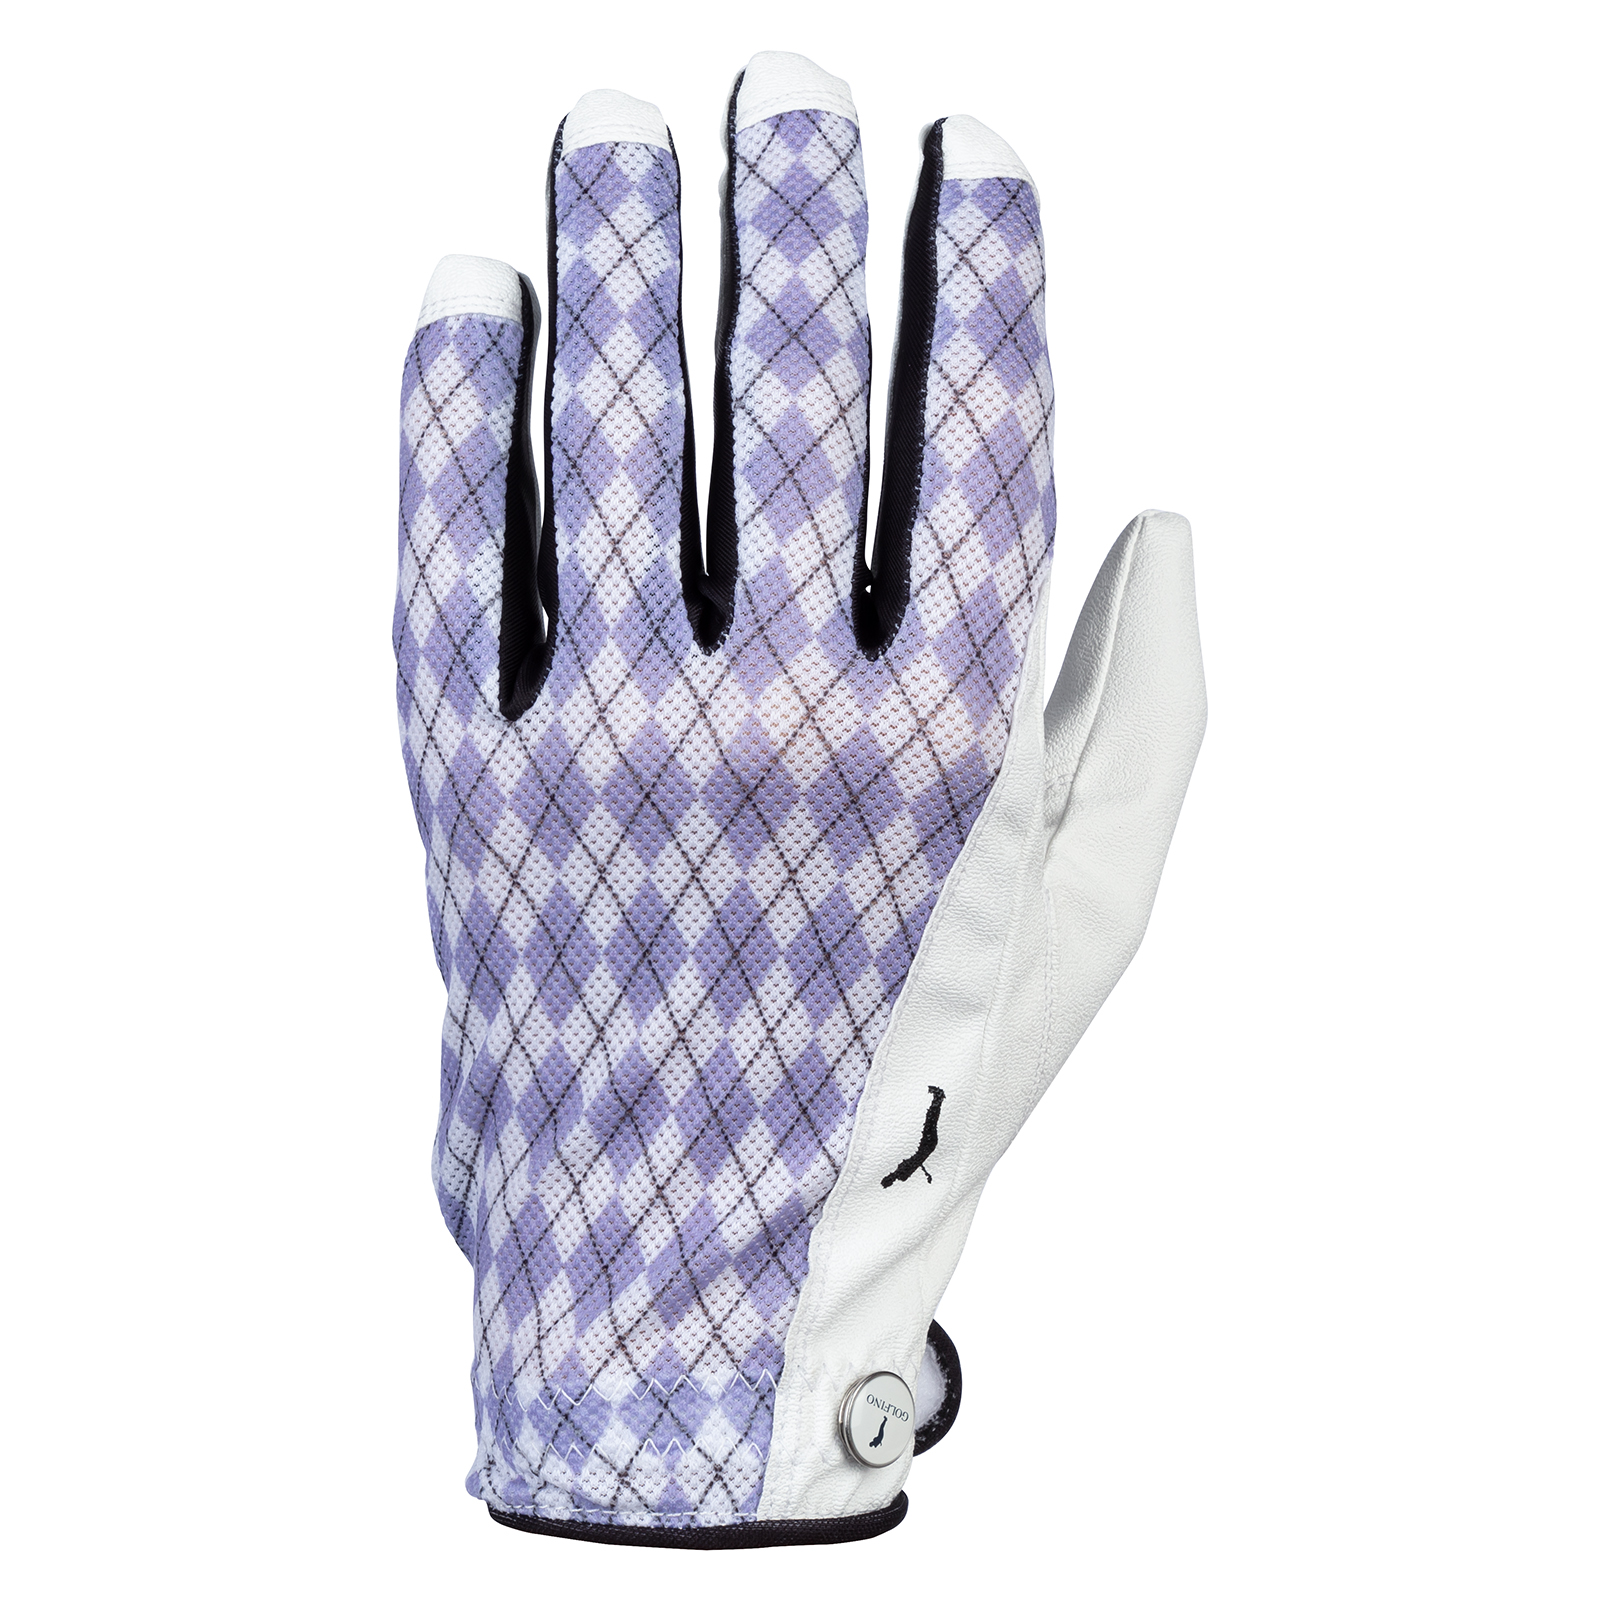 Damen Golf Handschuh links aus veganem Leder mit Argyle Muster